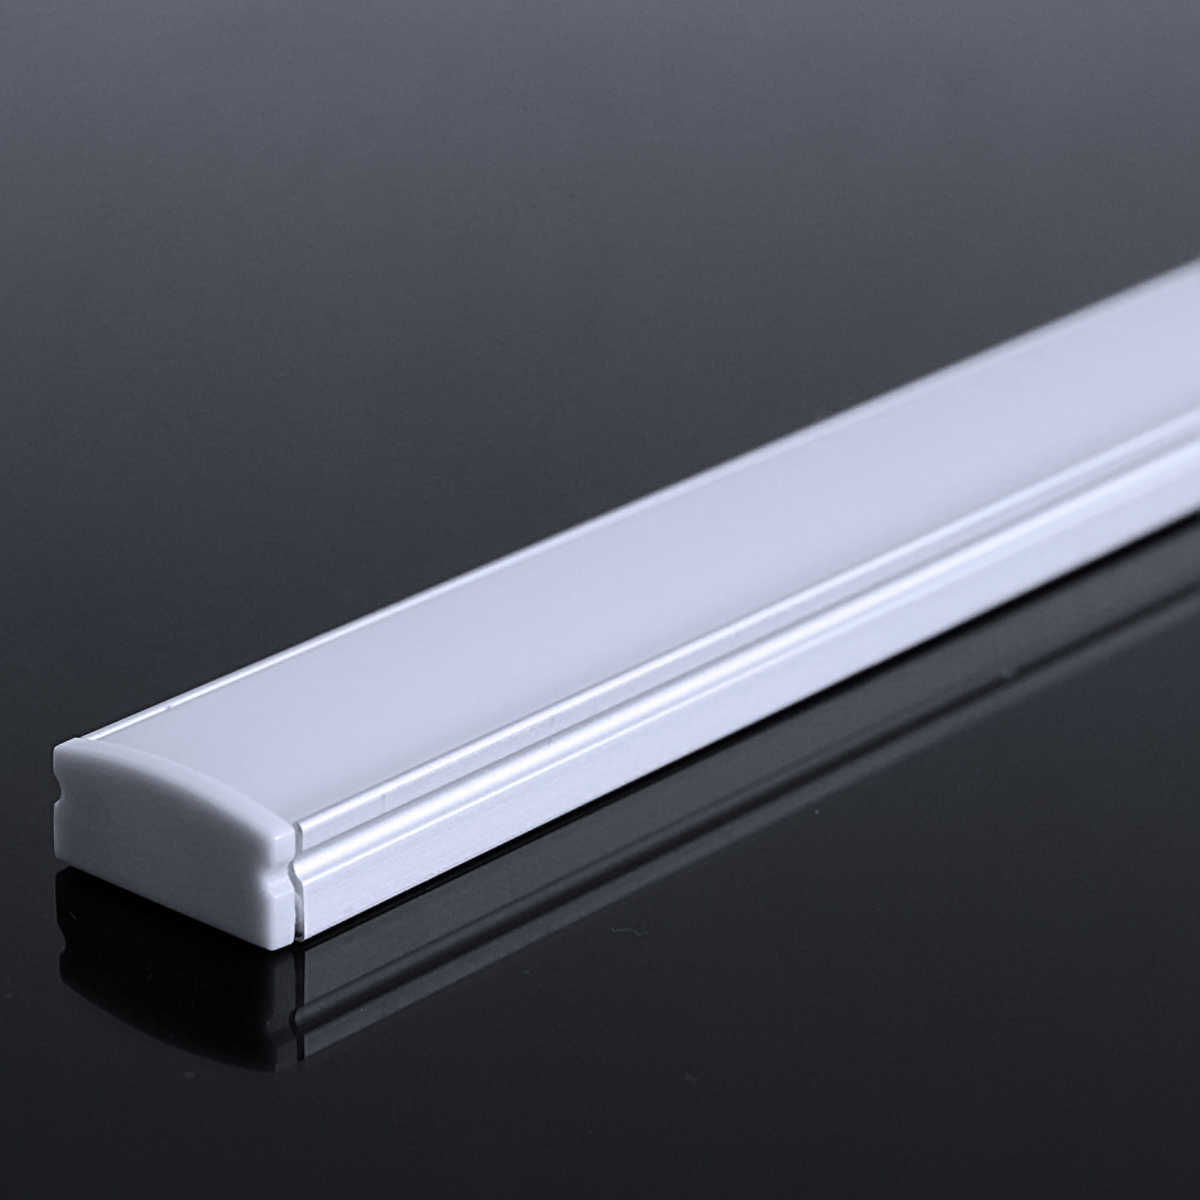 LED Flachprofil "Slim-Line" | Abdeckung diffus | Zuschnitt auf 76cm |